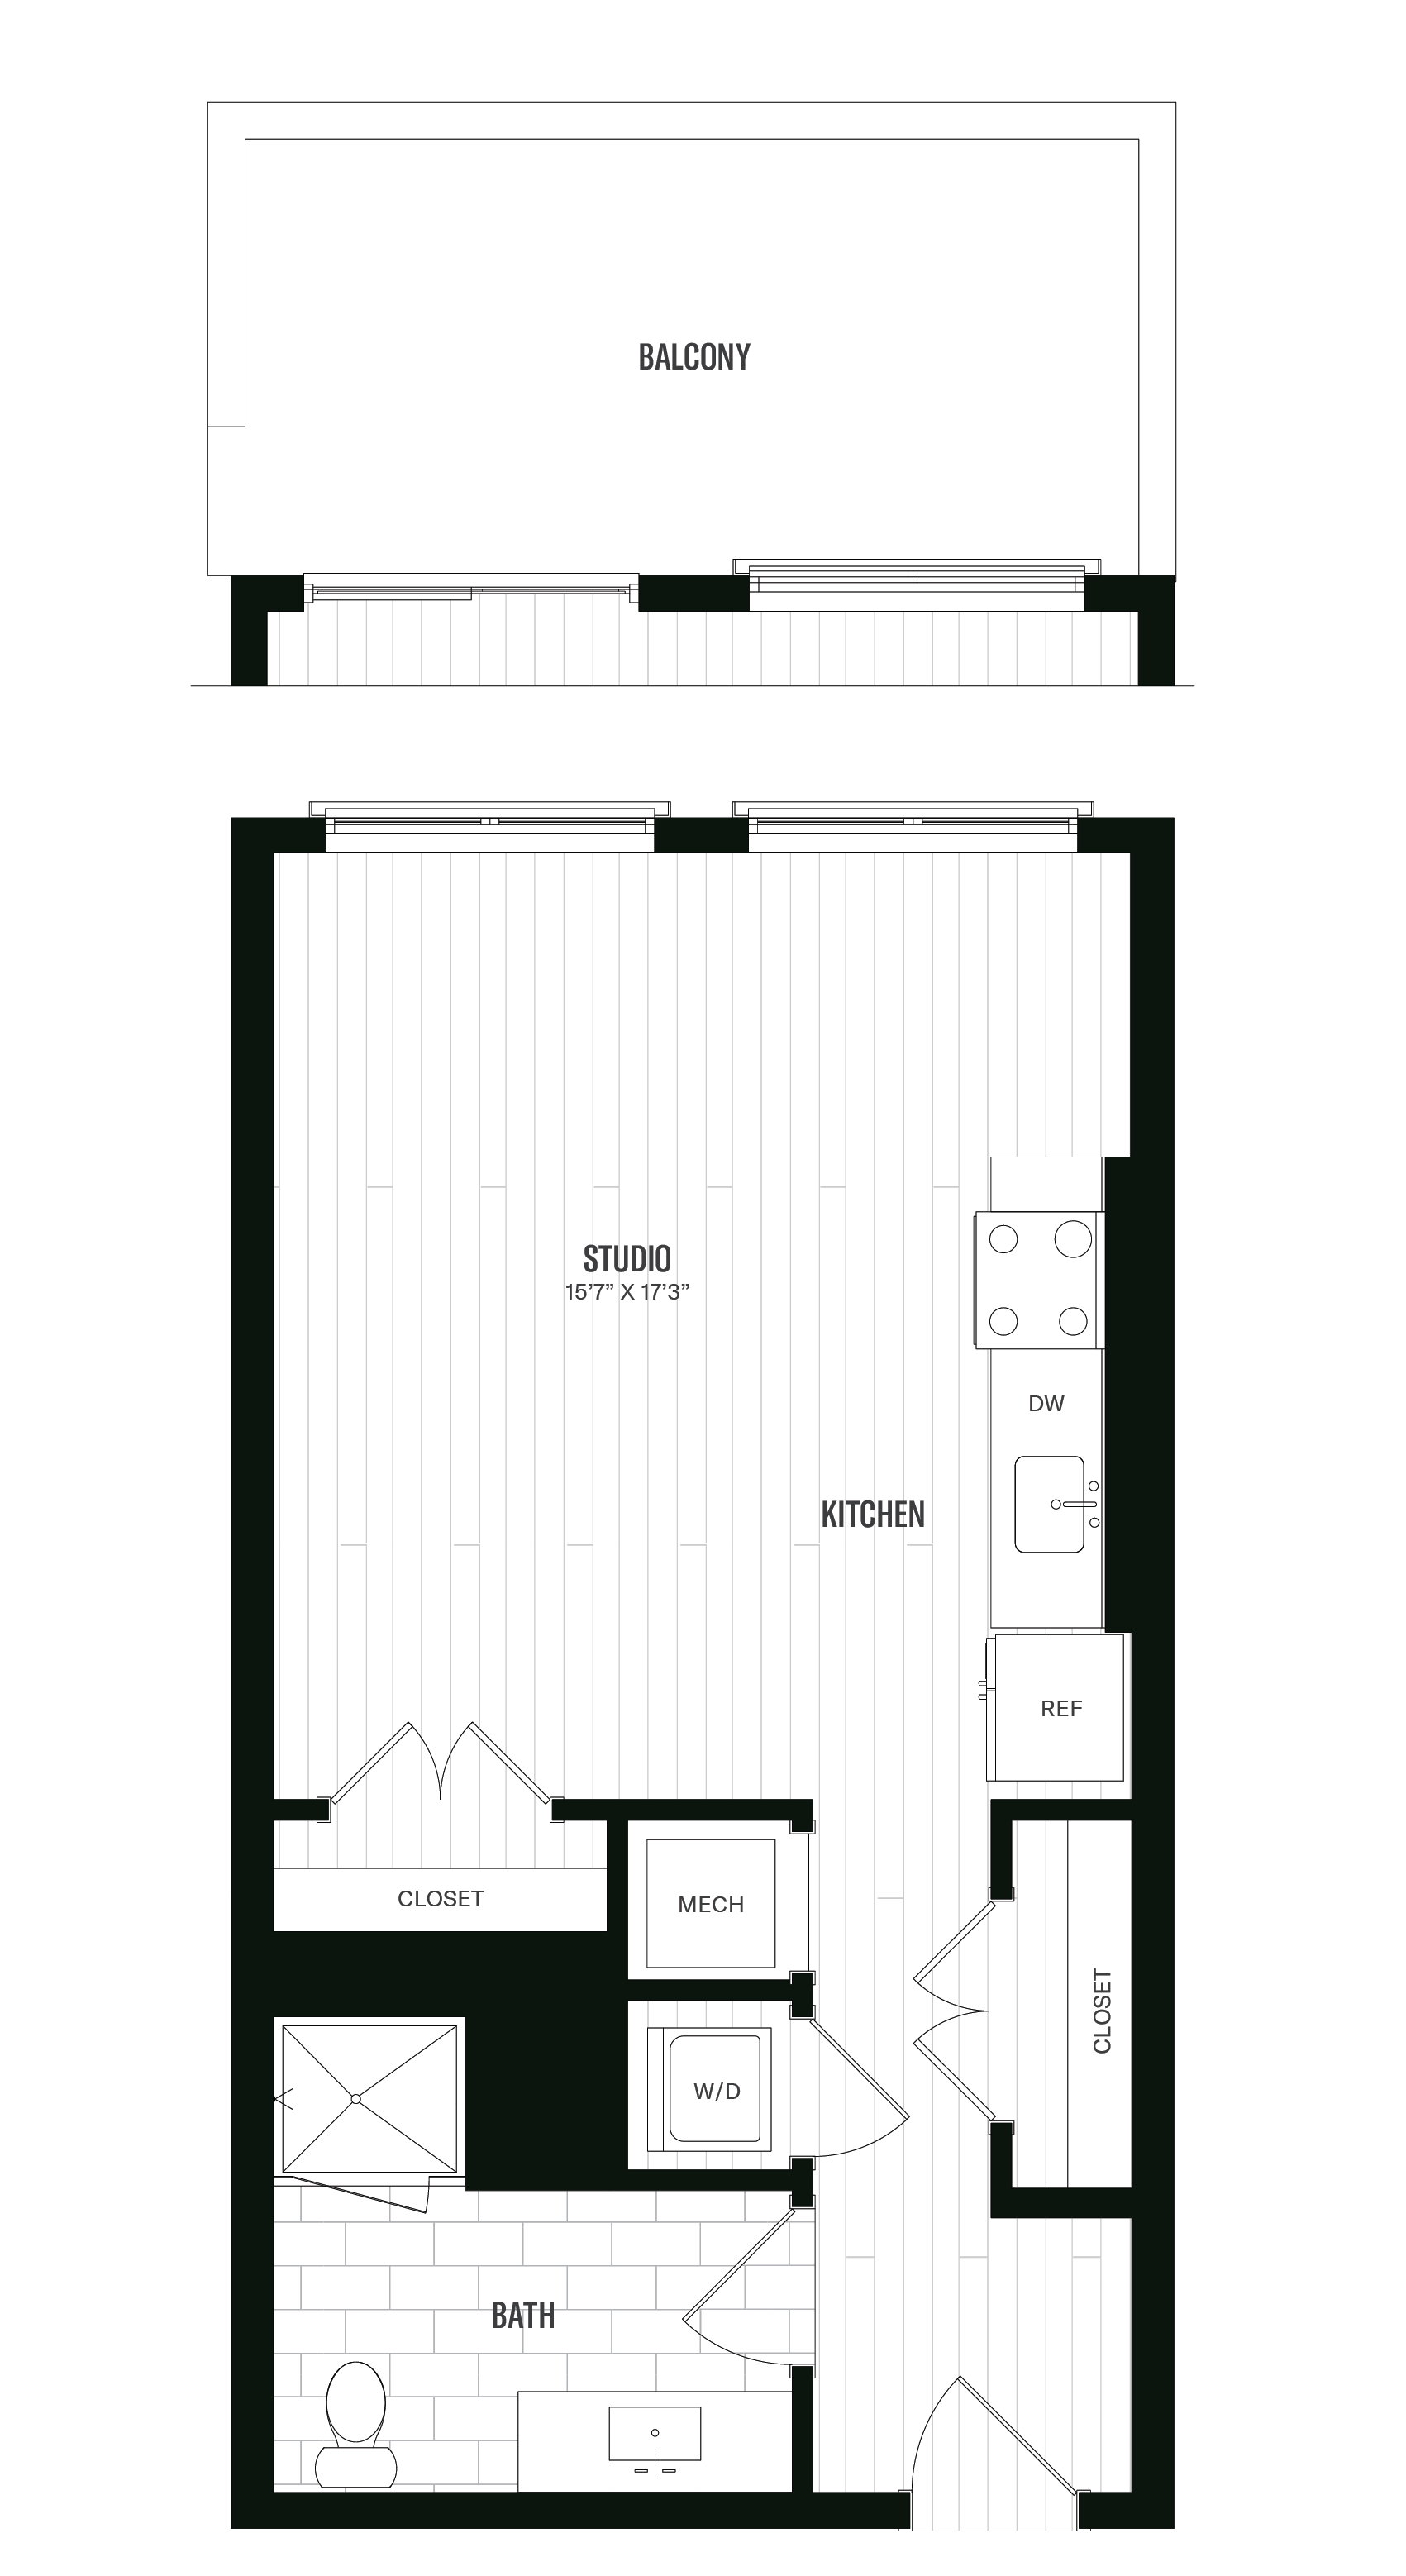 Floorplan image of unit 305